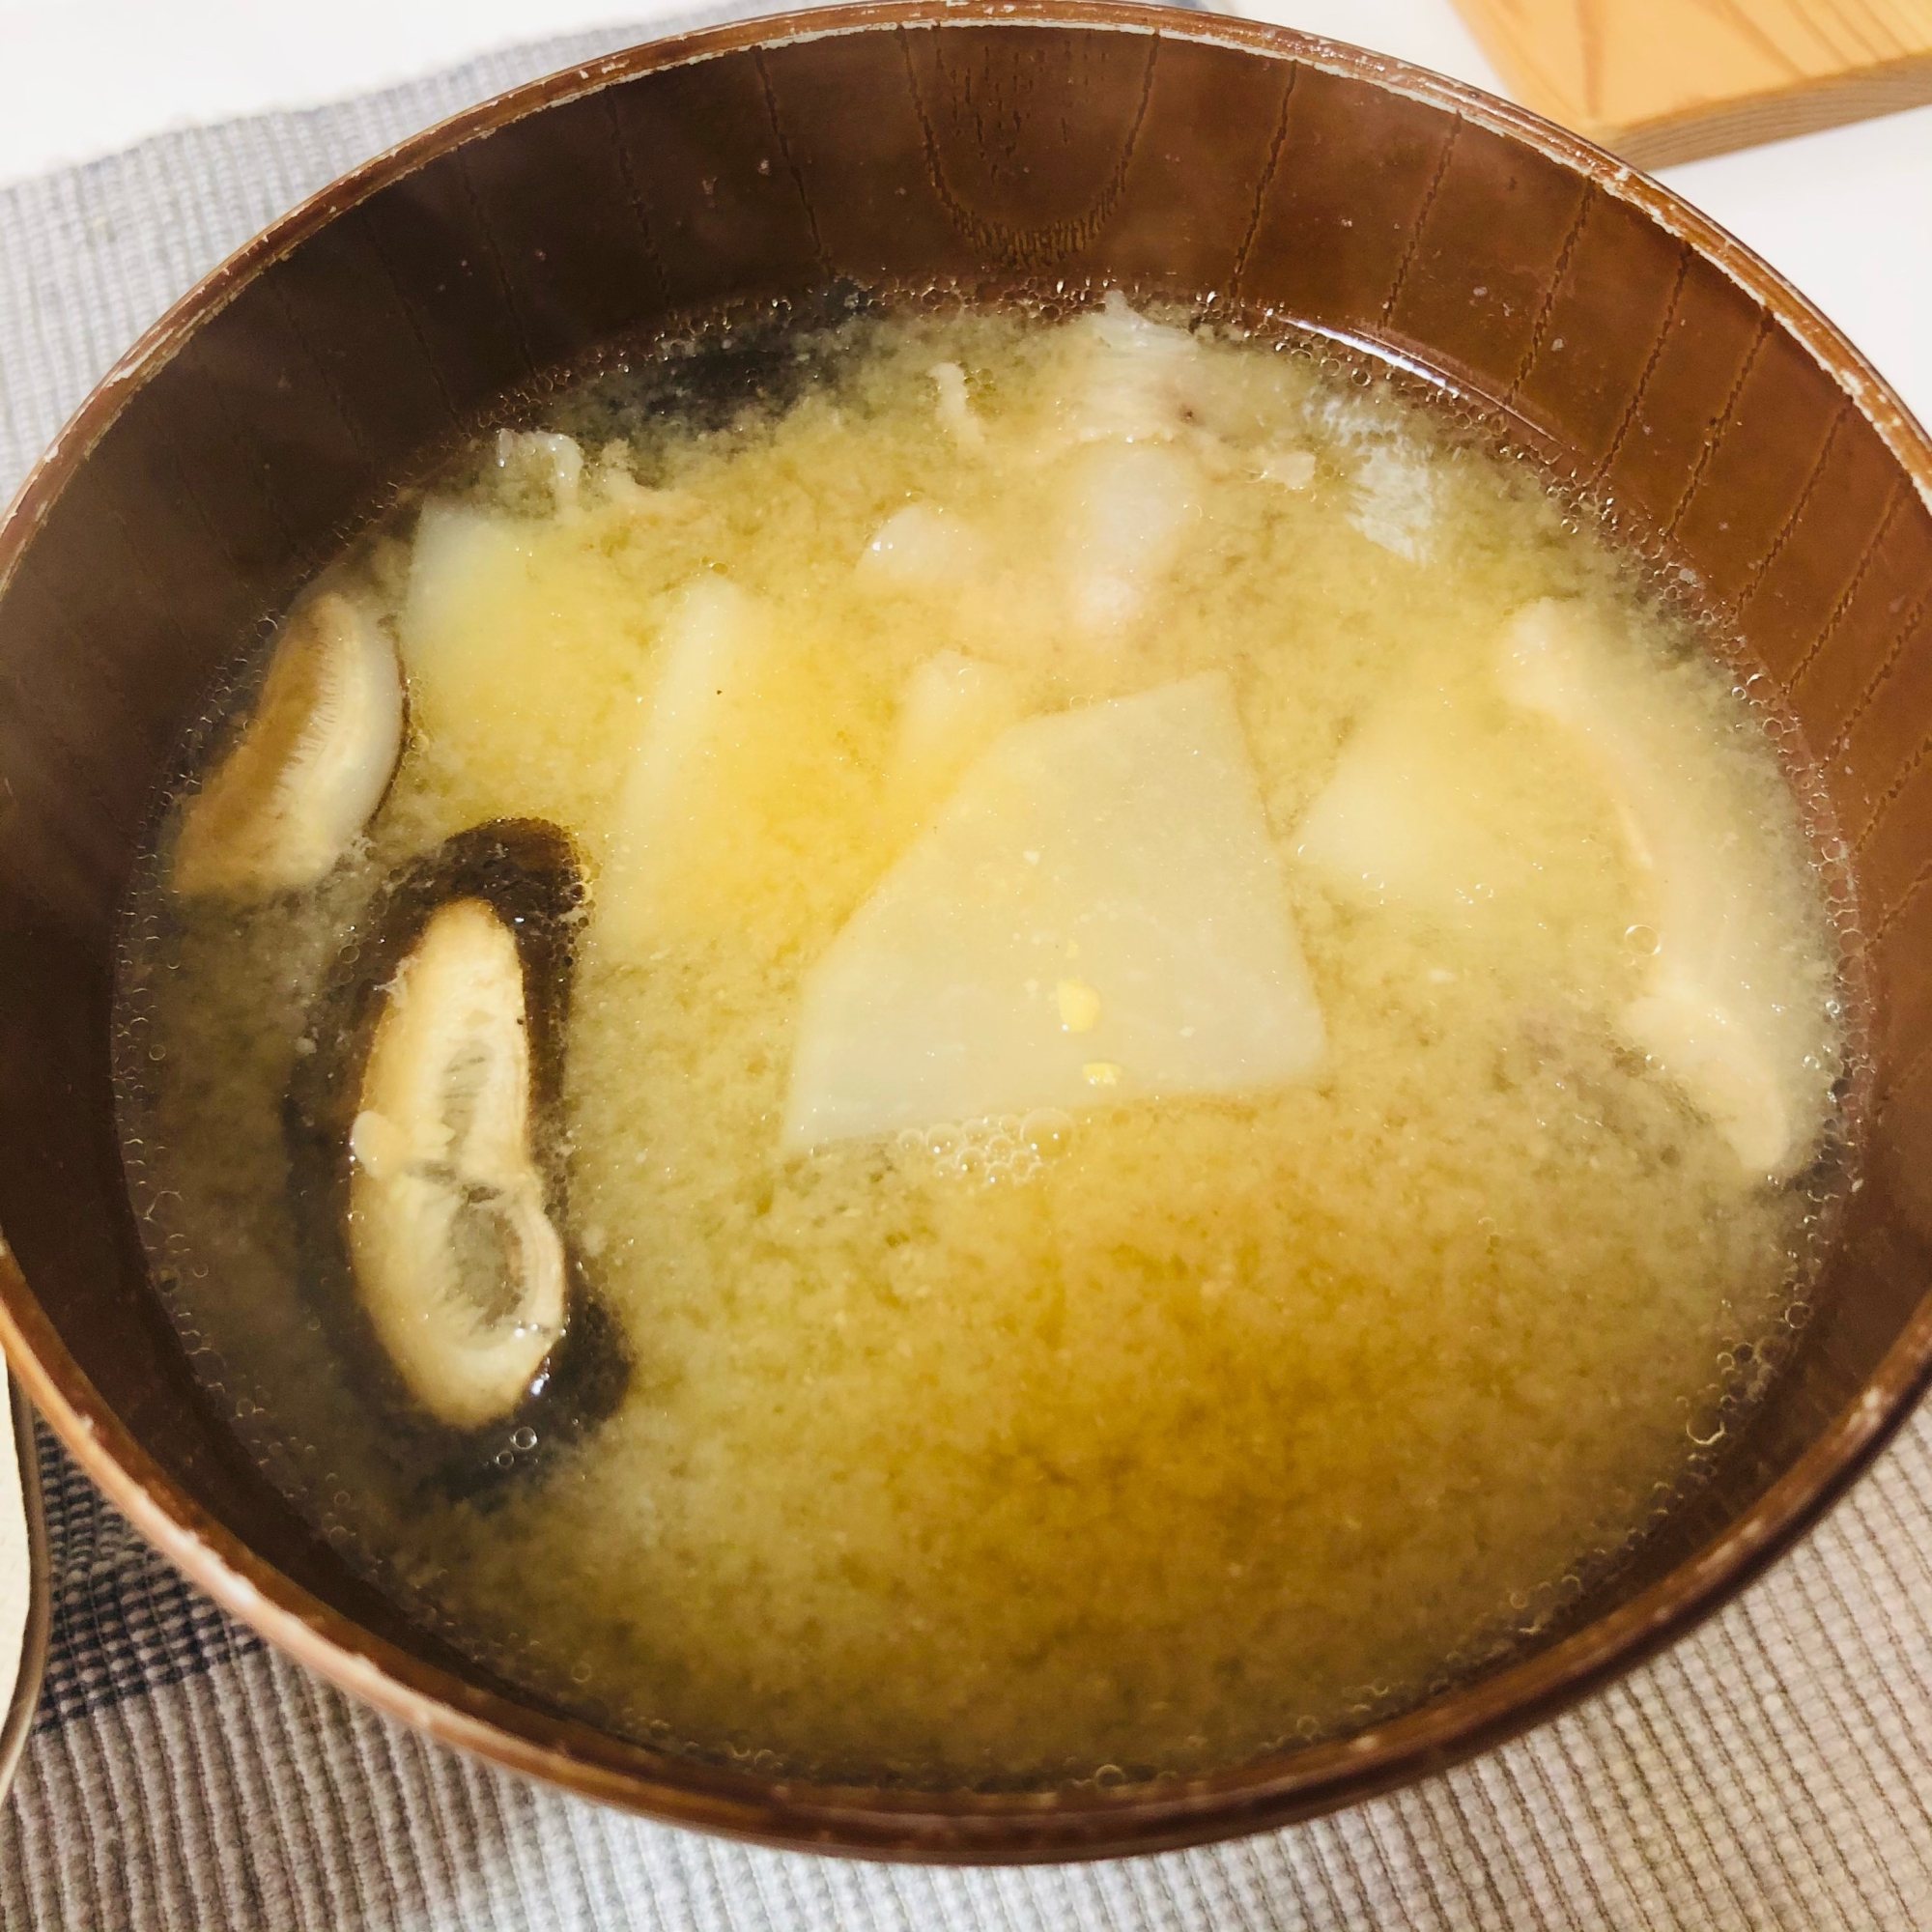 椎茸とかぶのお味噌汁